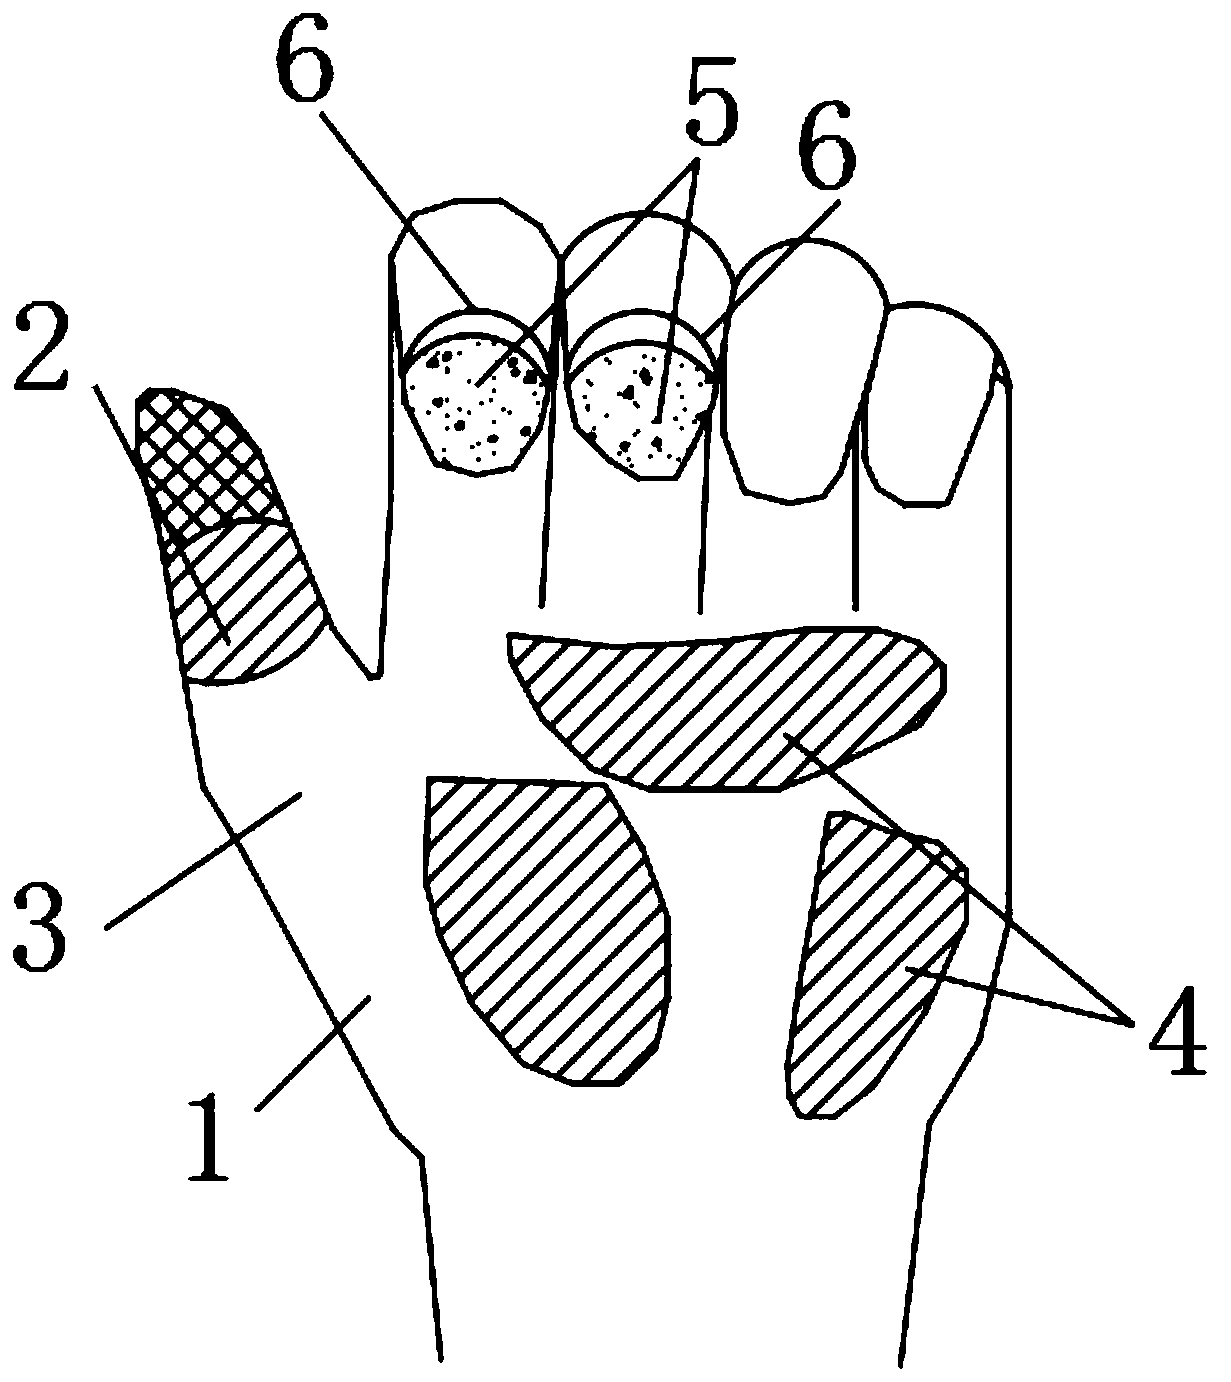 Novel multifunctional rubber gloves